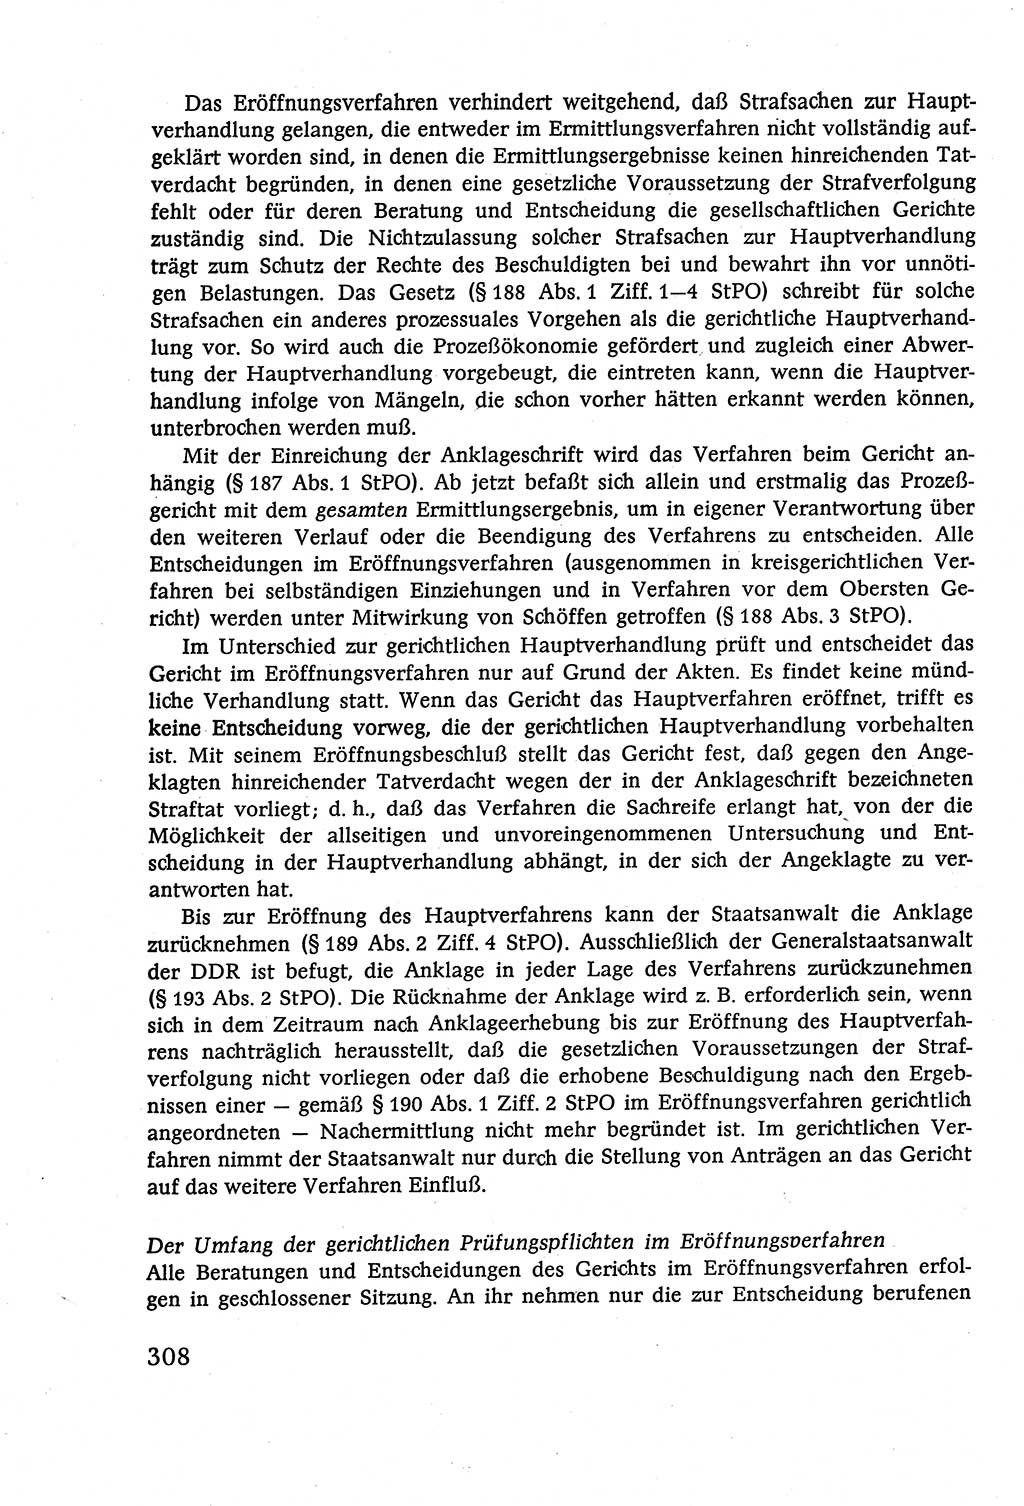 Strafverfahrensrecht [Deutsche Demokratische Republik (DDR)], Lehrbuch 1977, Seite 308 (Strafverf.-R. DDR Lb. 1977, S. 308)